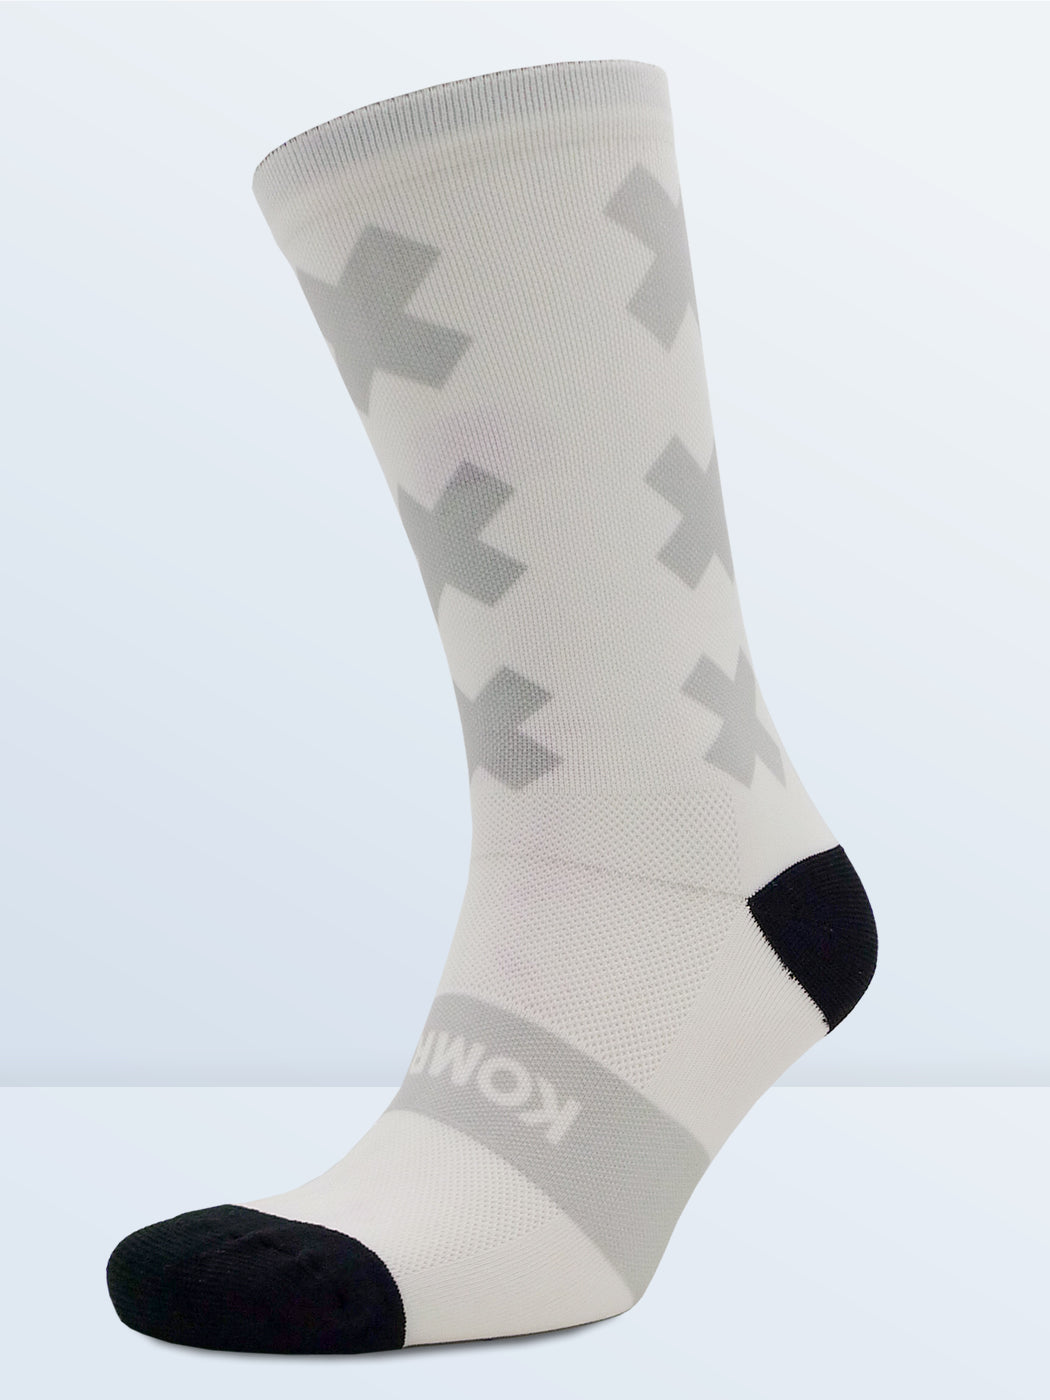 Triple X Socks - White & Grey